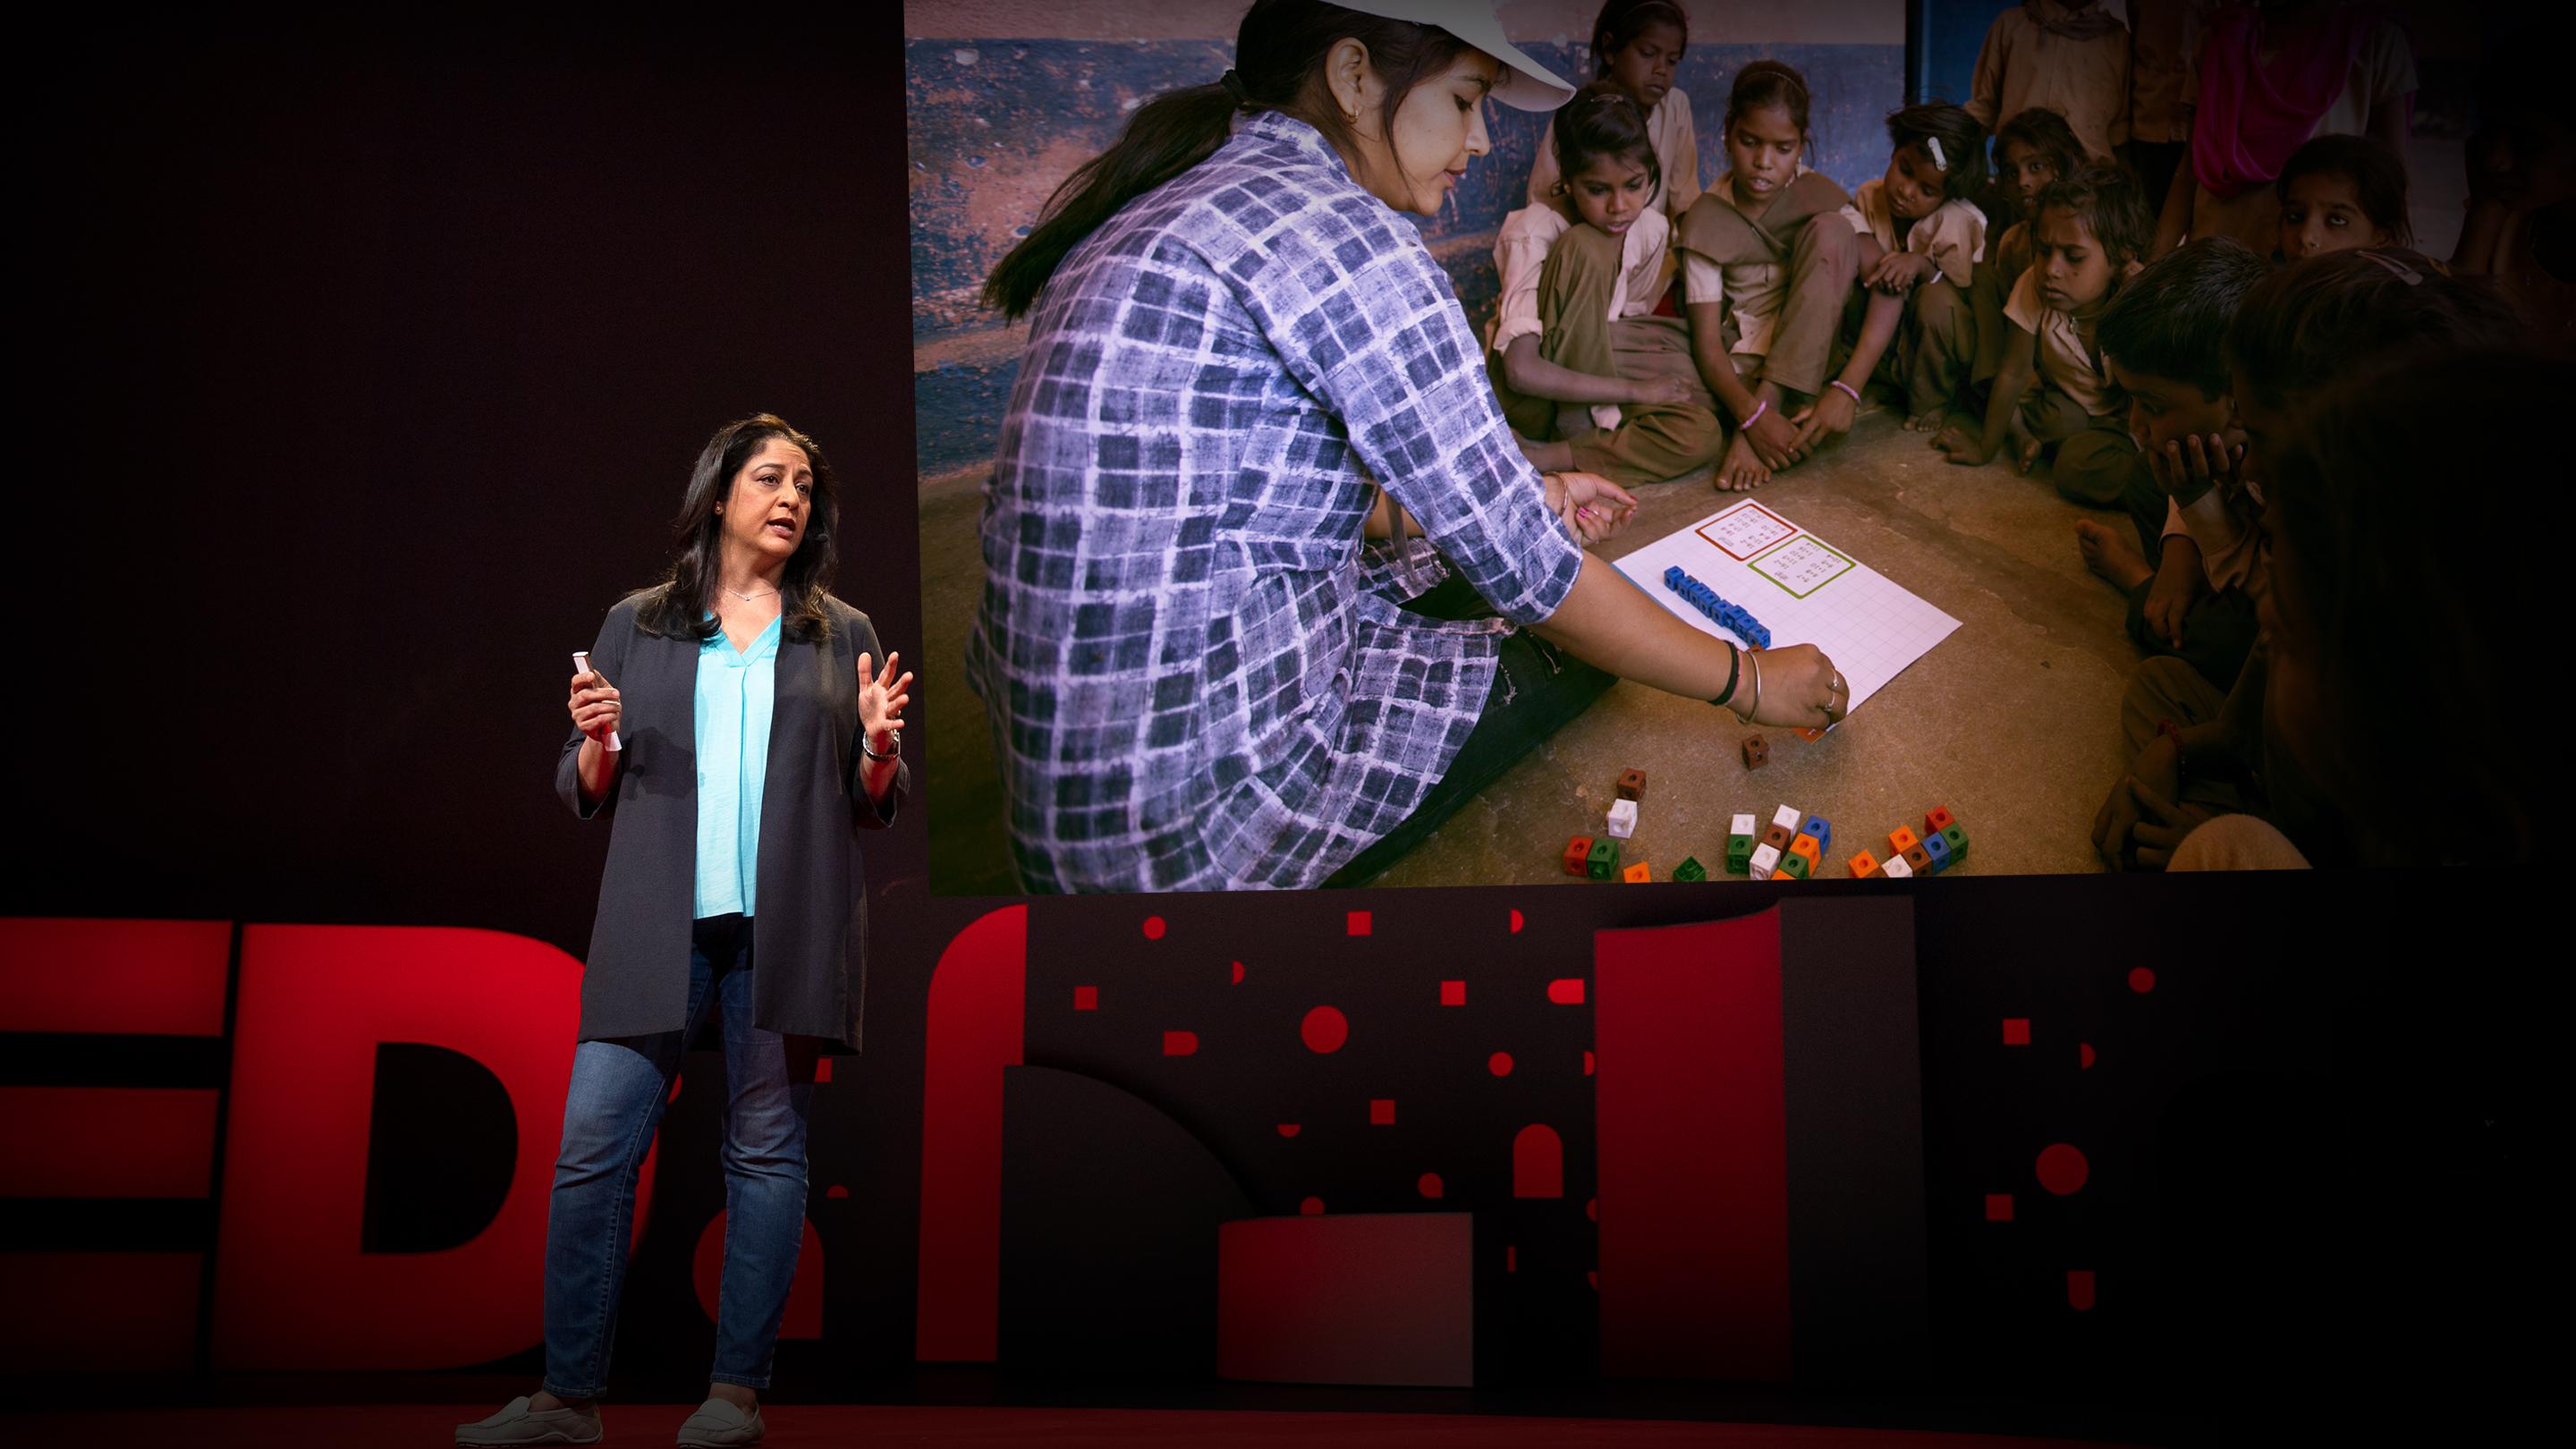 Un plan audacieux pour émanciper 1,6 million de filles déscolarisées en Inde | Safeena Husain